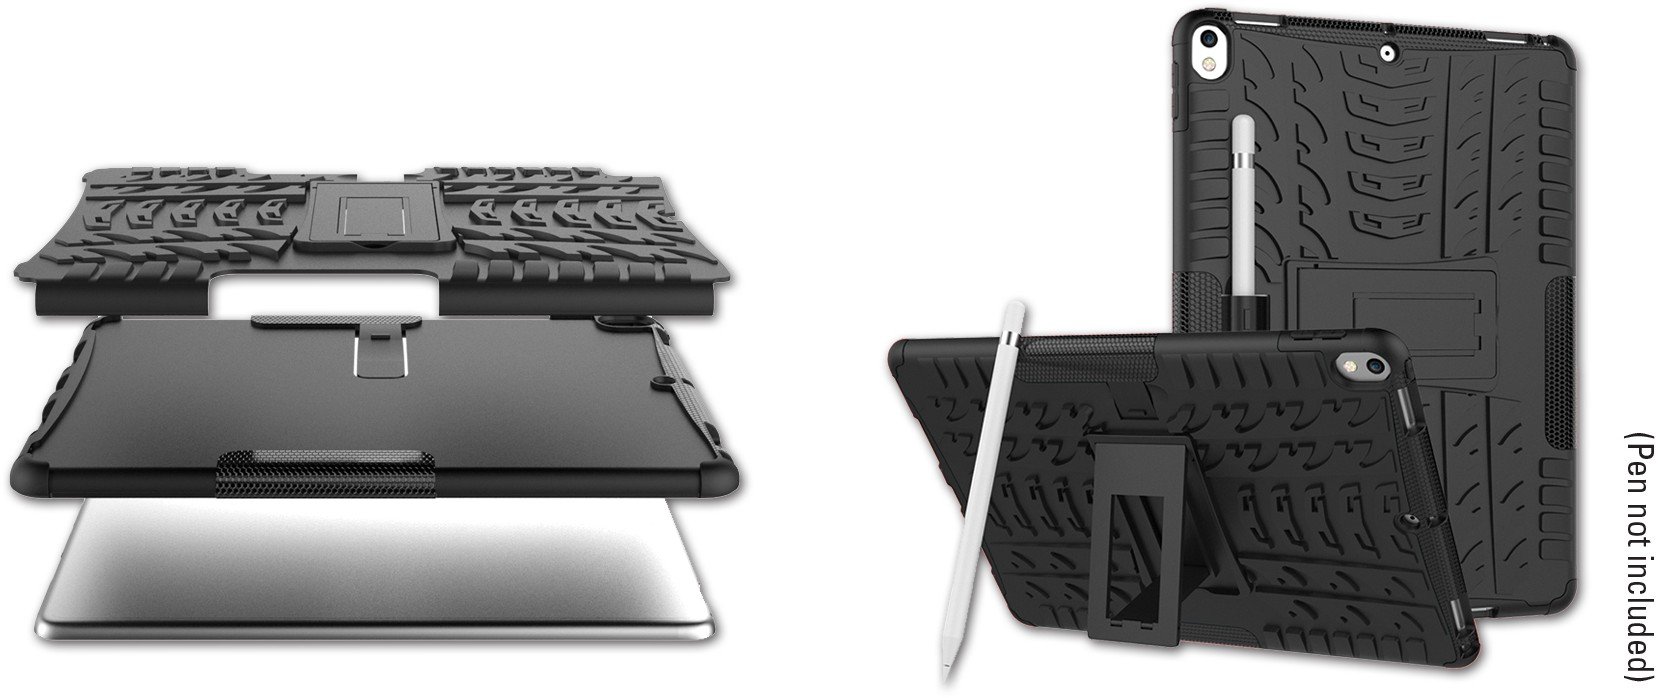 Huse tablete - Husa pentru pentru iPad 2/3/4 , Sandberg , negru